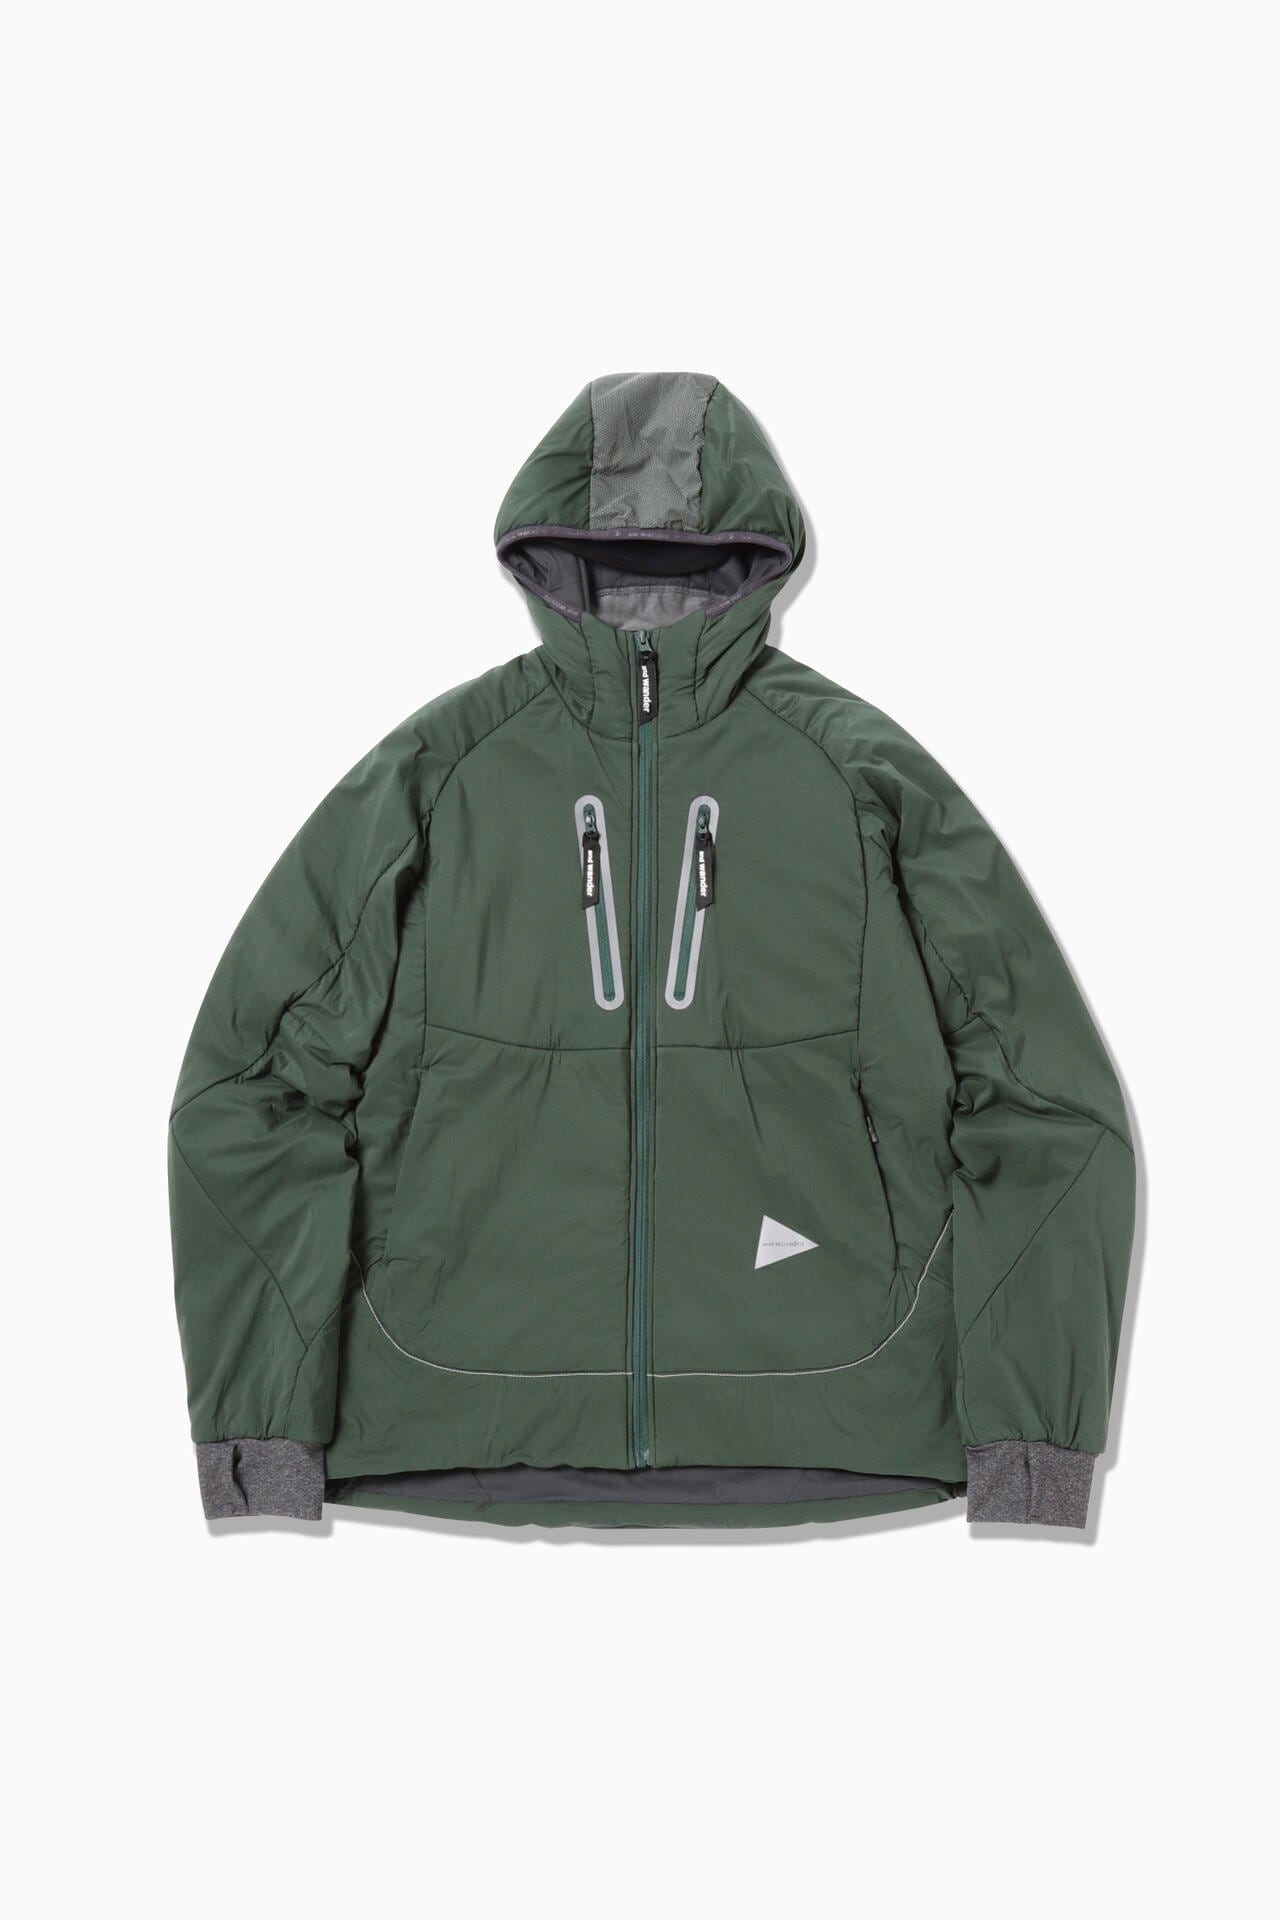 13,500円and wander vent hoodie gray womens M